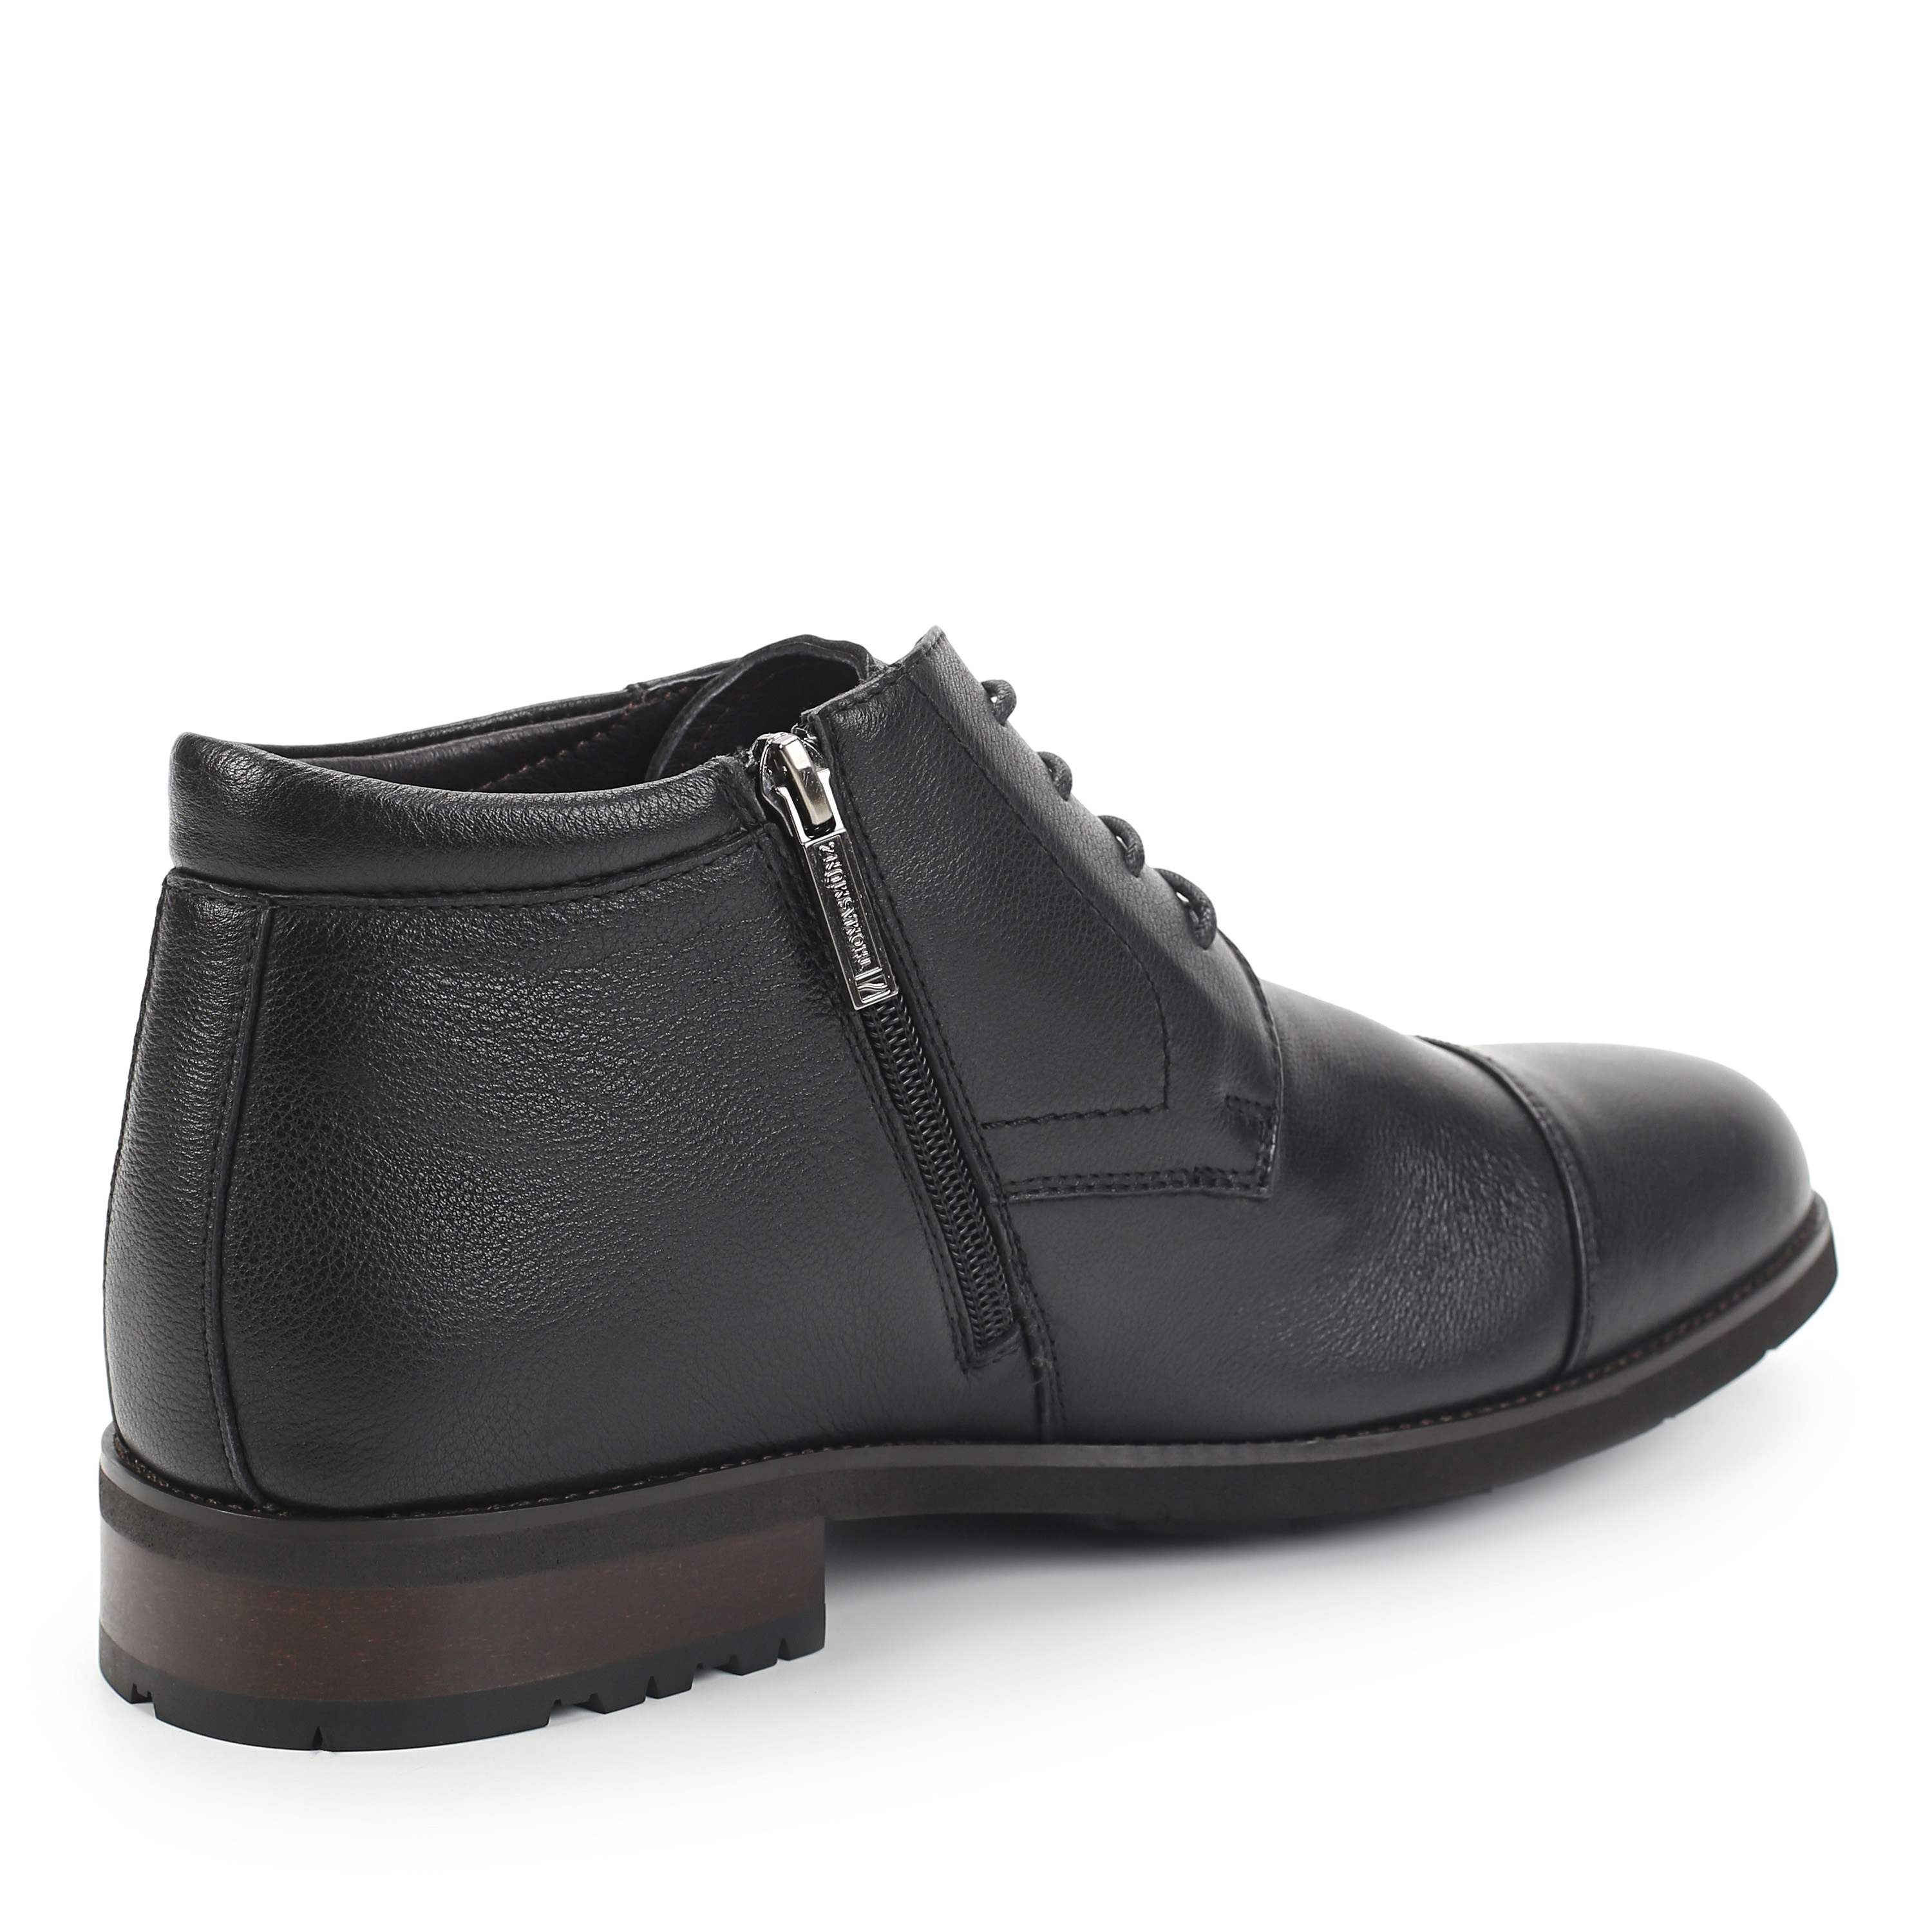 Ботинки Thomas Munz 073-366A-3102 073-366A-3102, цвет черный, размер 45 дерби - фото 3